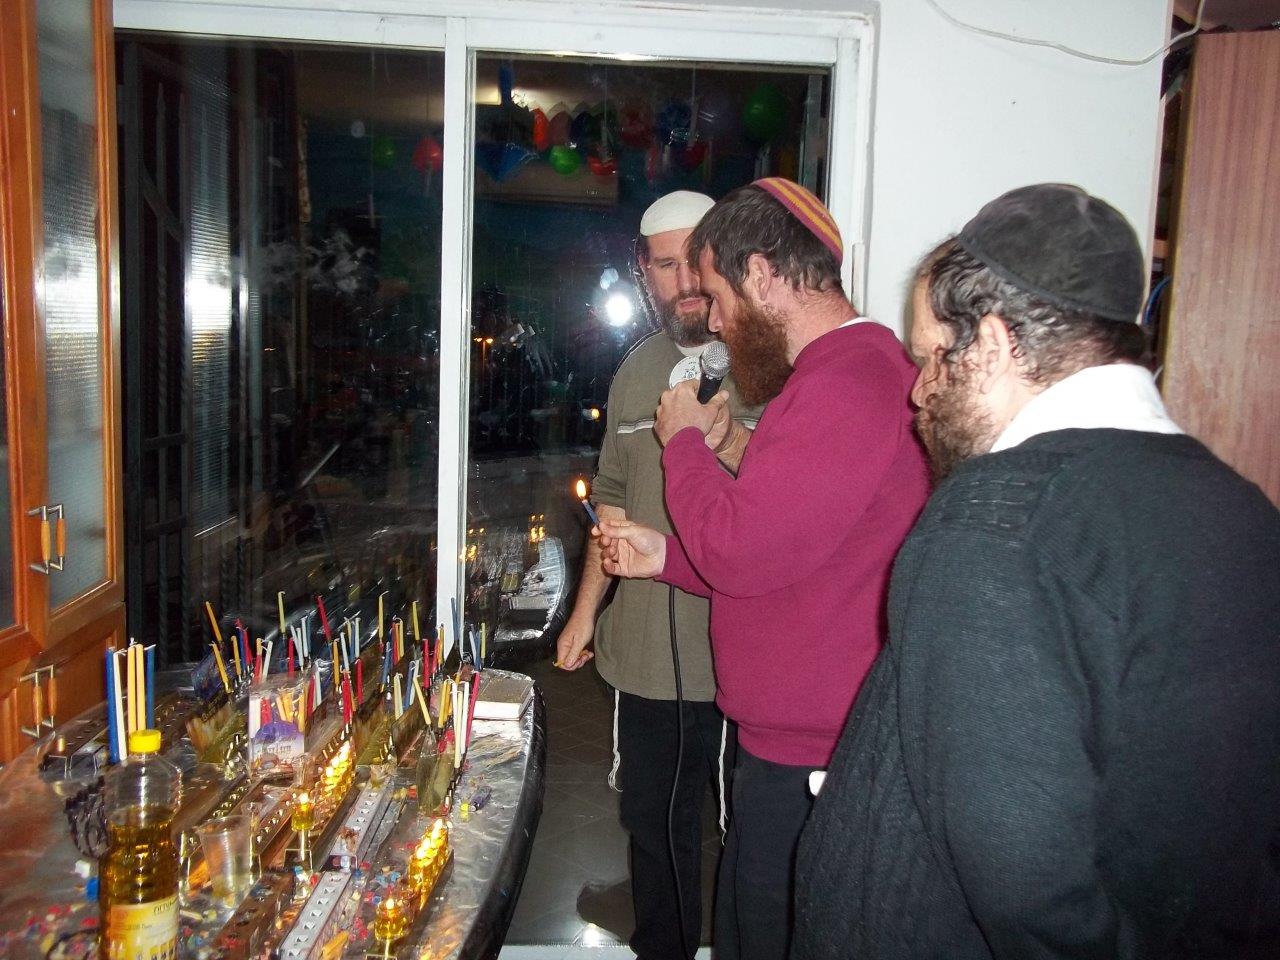 Activites around Shalvat Haim - Chanukah